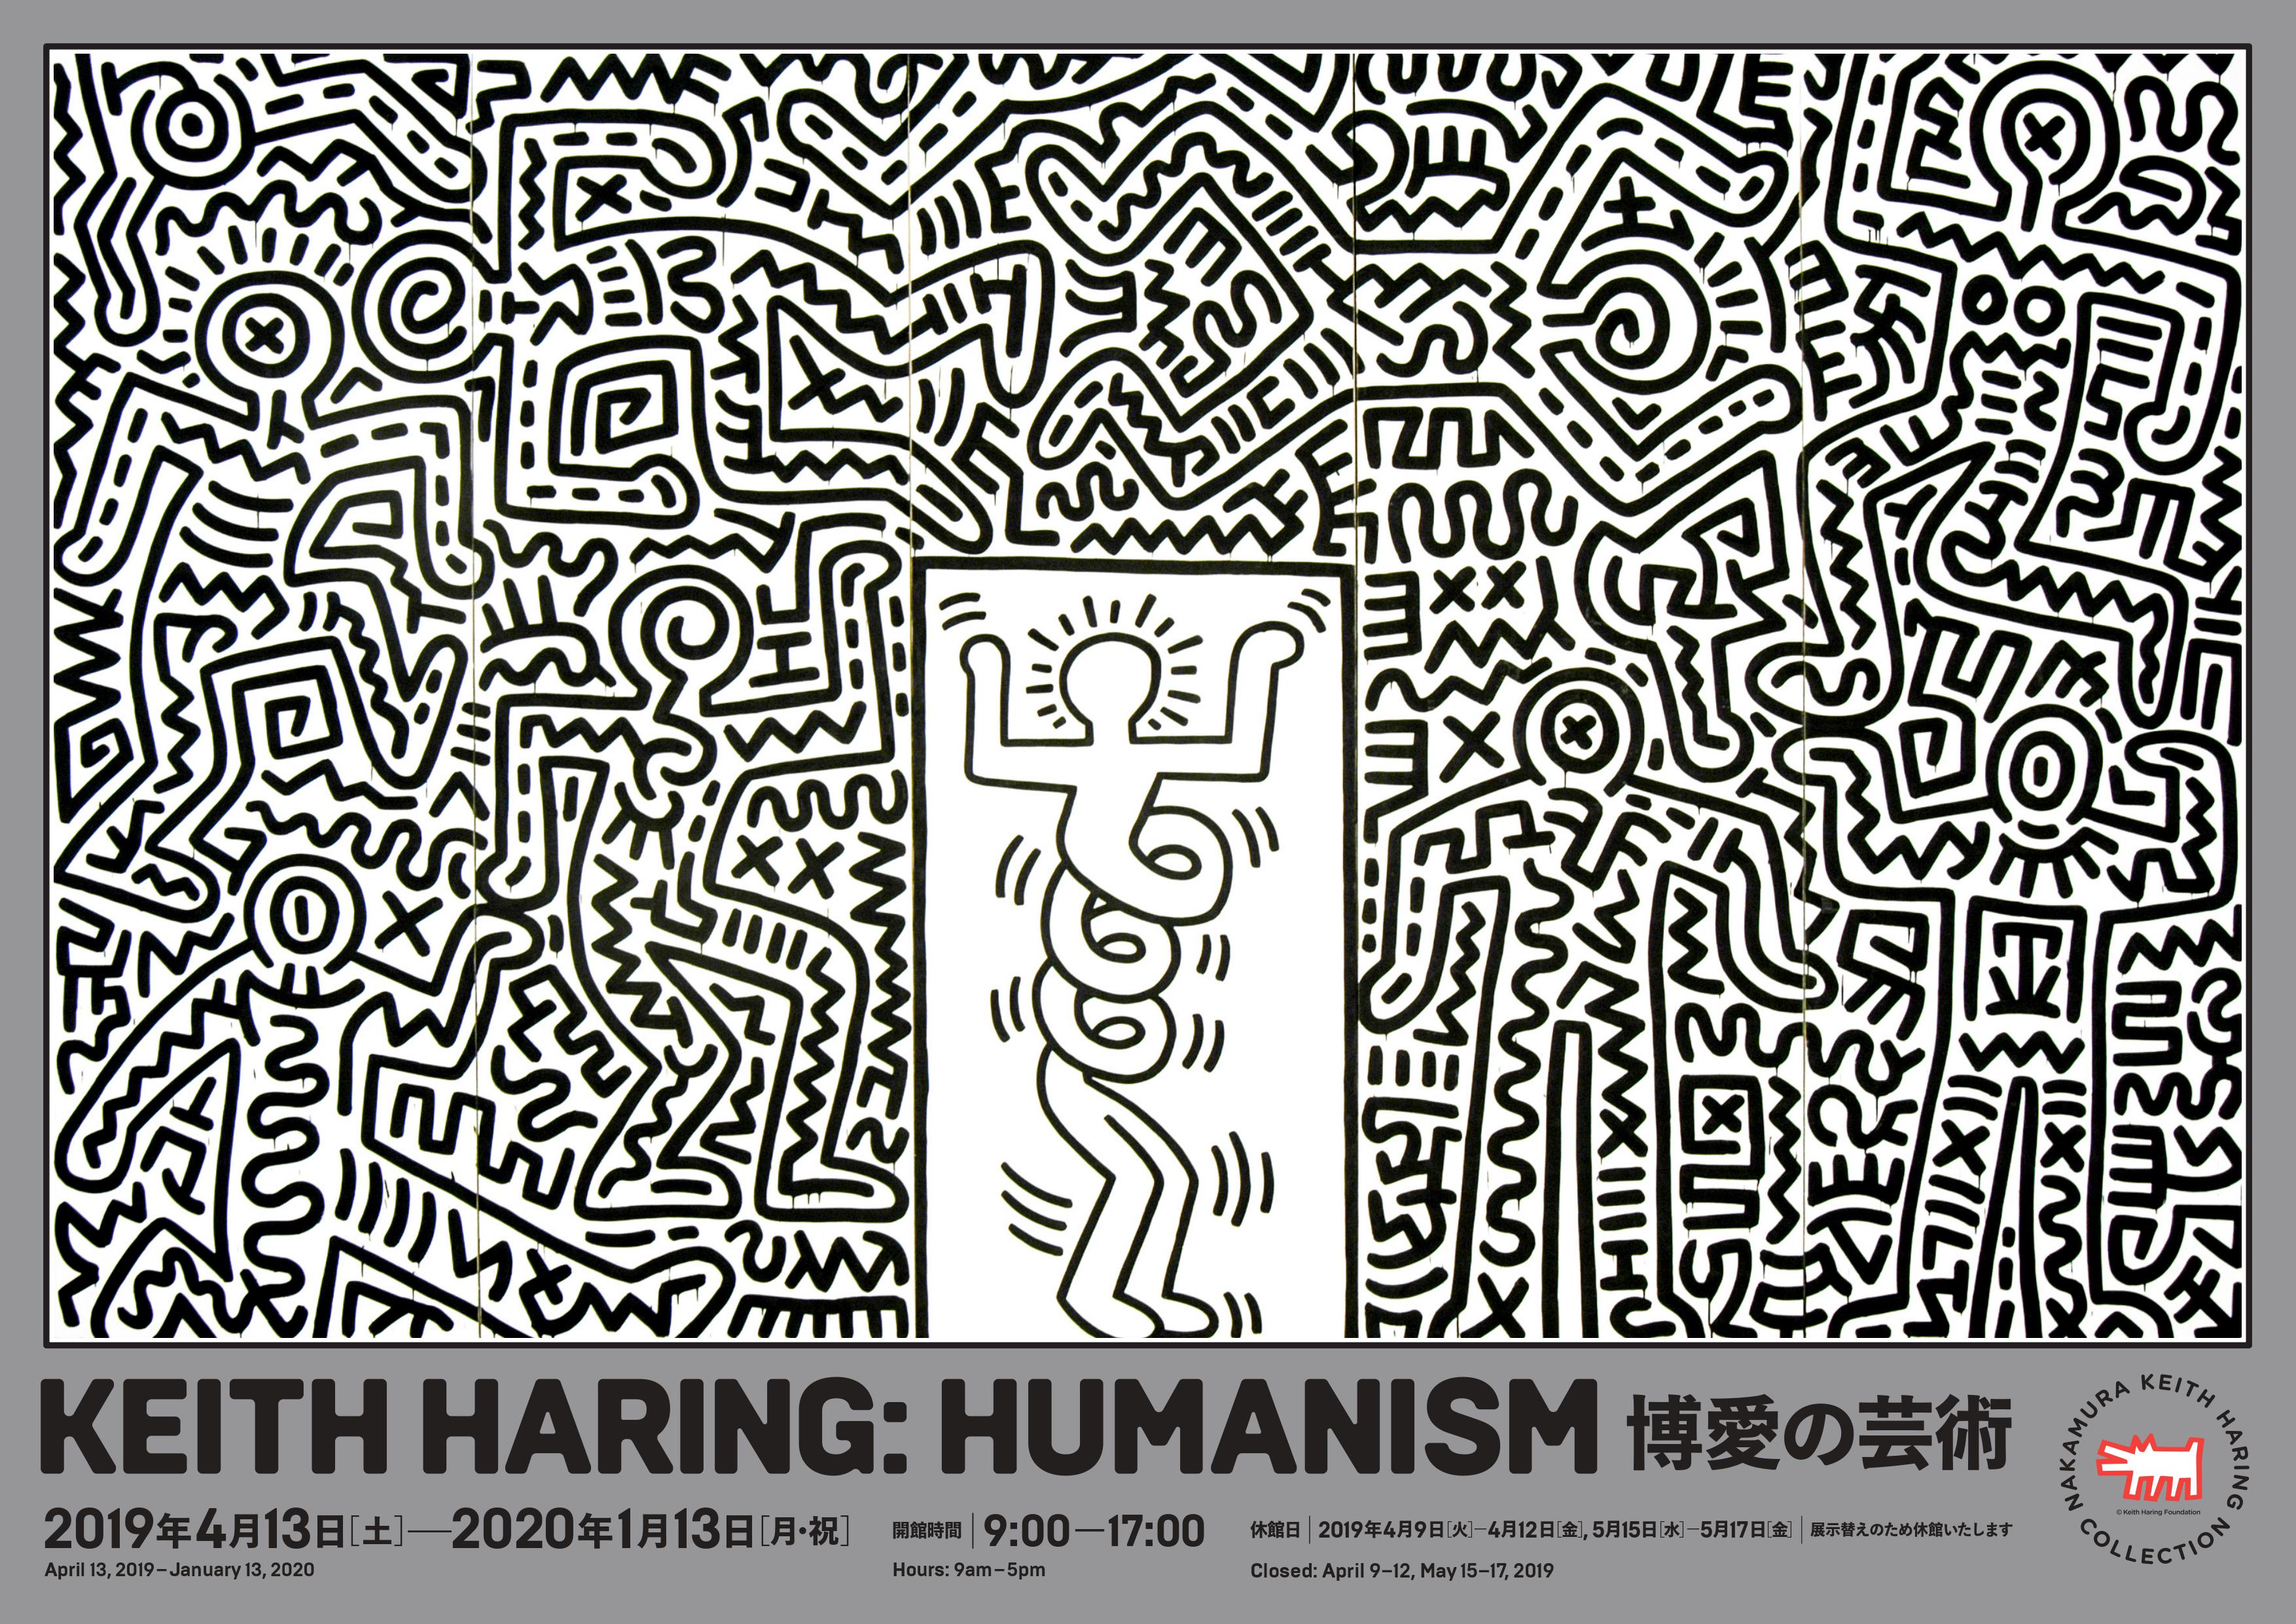 中村キース ヘリング美術館 19年度コレクション展 Keith Haring Humanism 博愛の芸術 中村キース ヘリング 美術館のプレスリリース